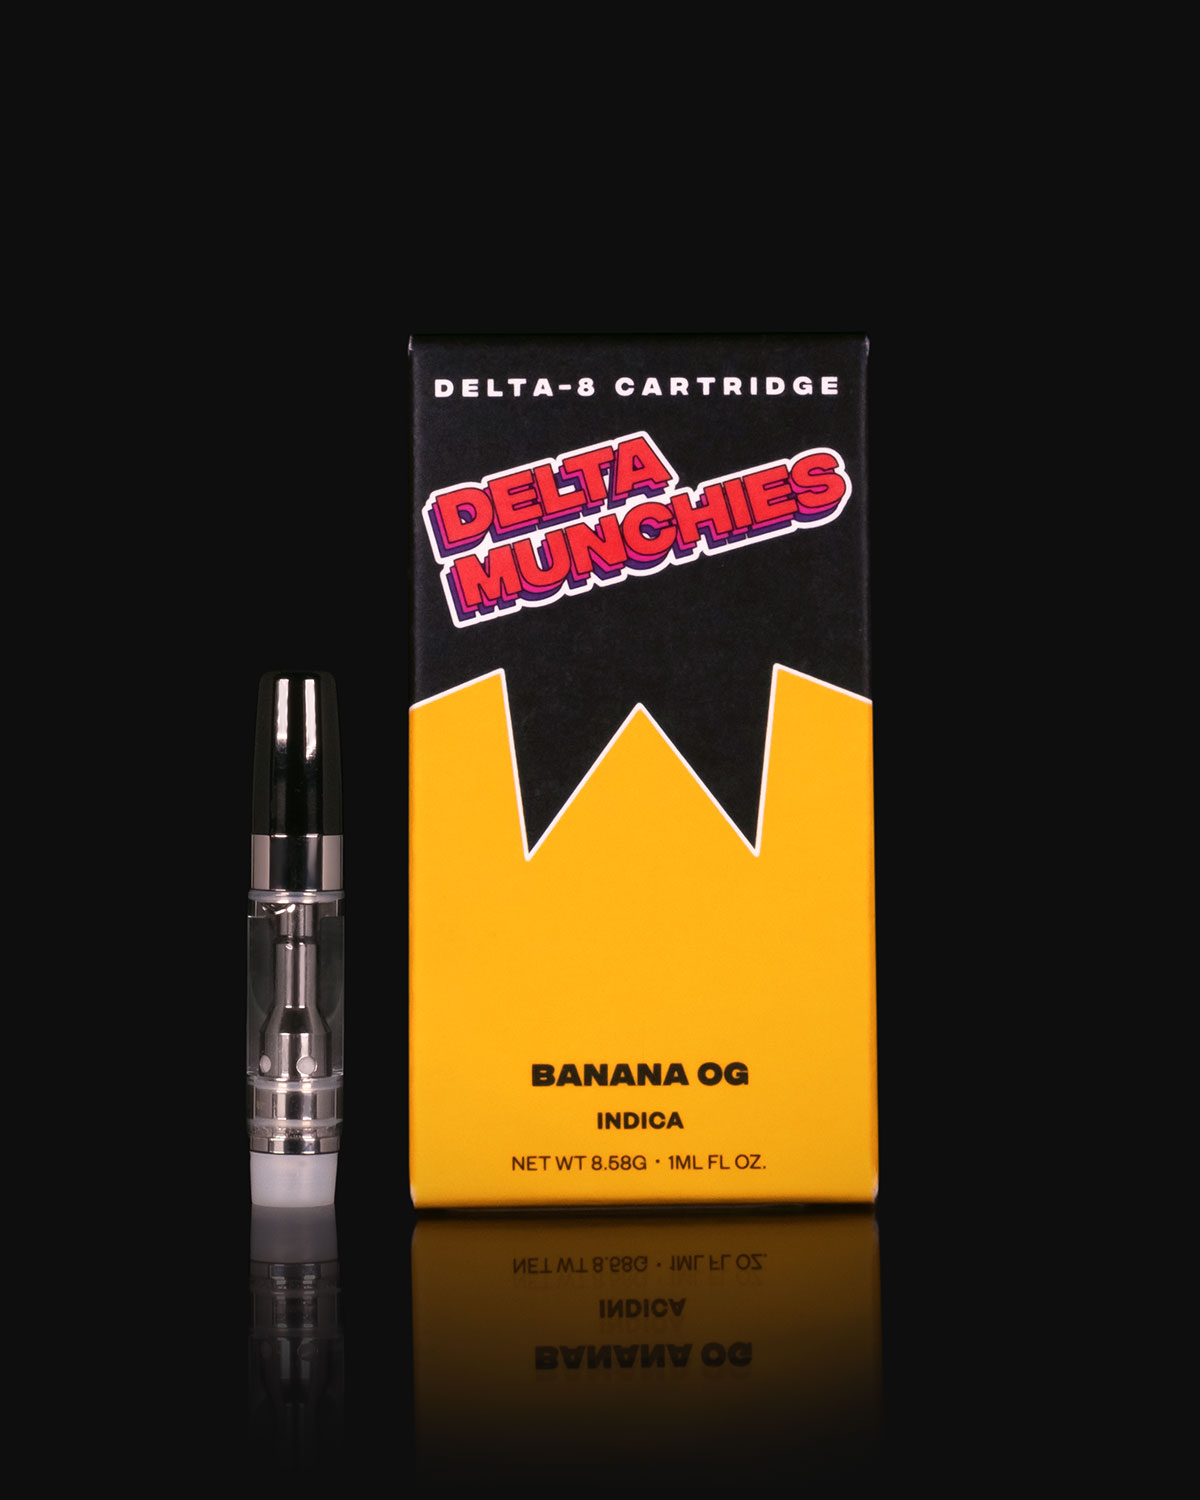 Delta Munchies Banana OG 1G Delta 8 Cartridge